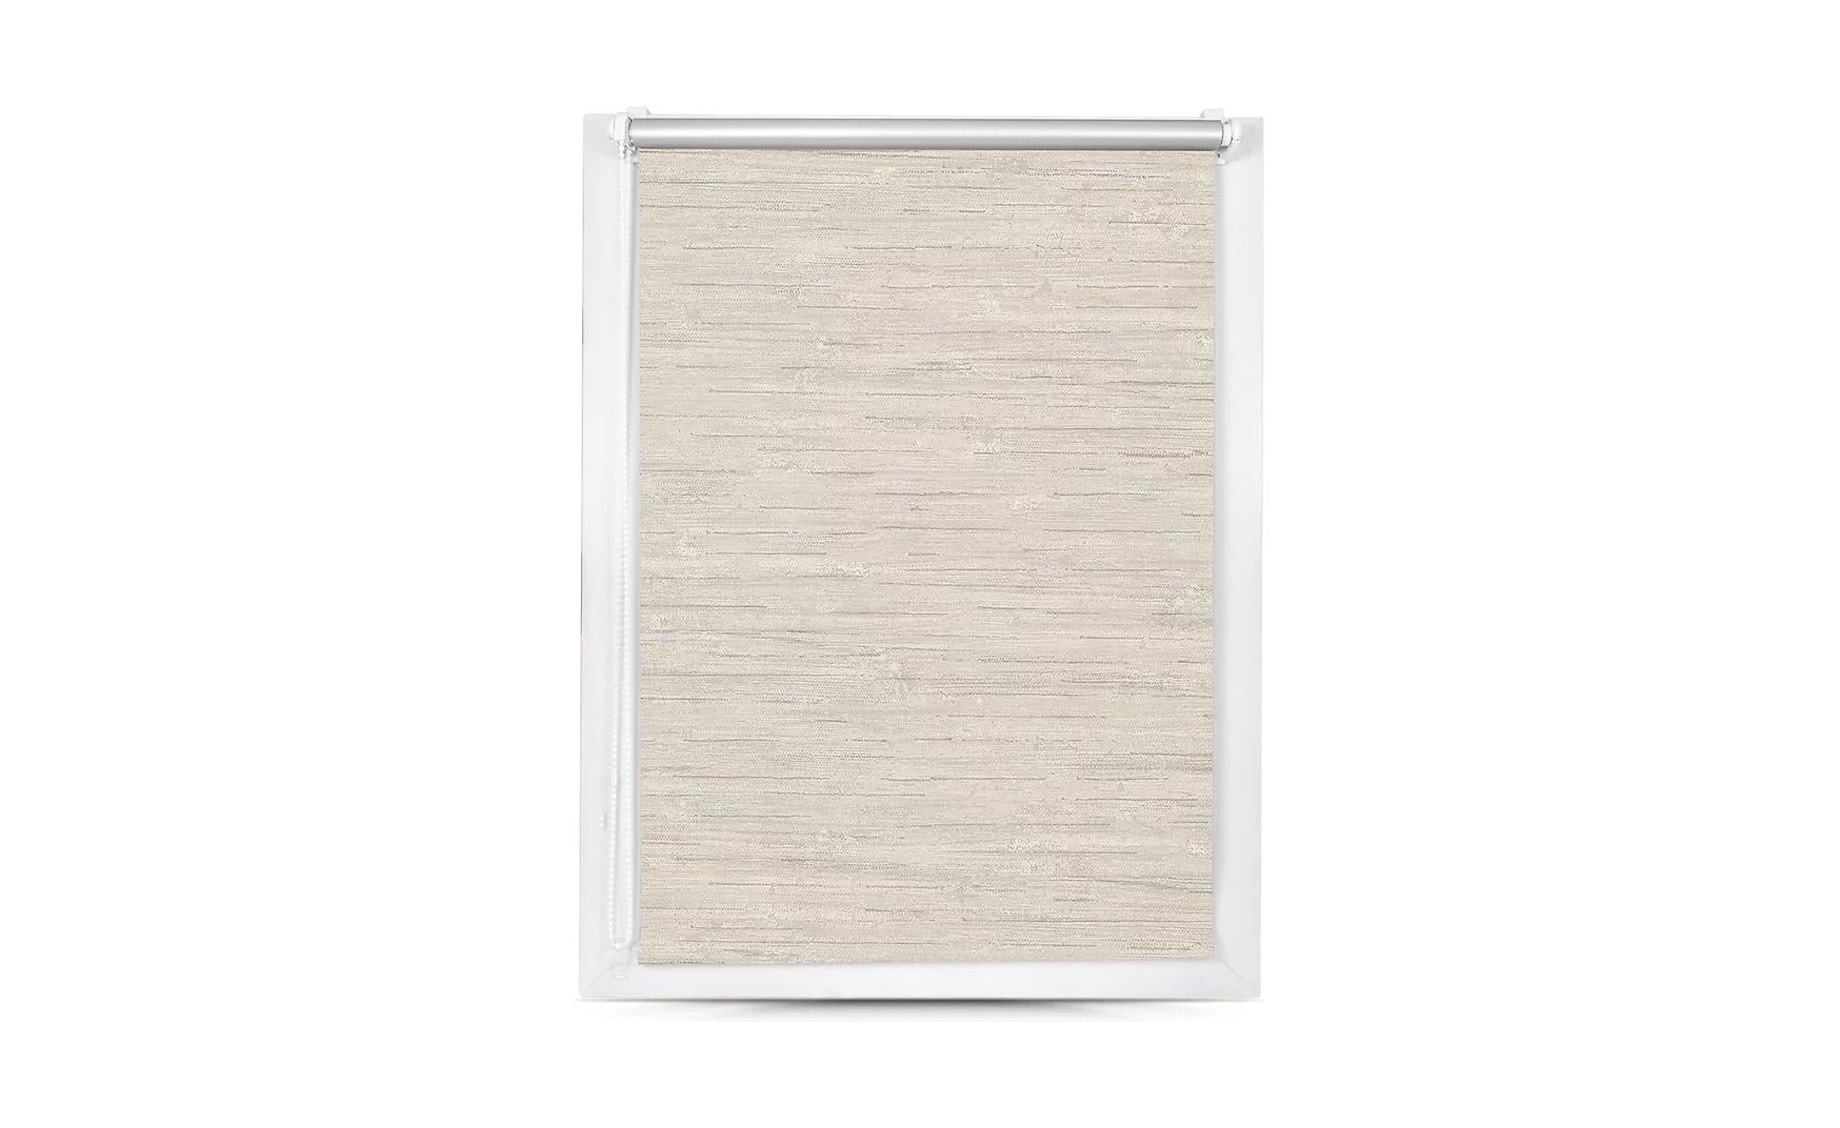 Rolo zavesa Mini Silver, 110X150 cm, bela, SXL-063